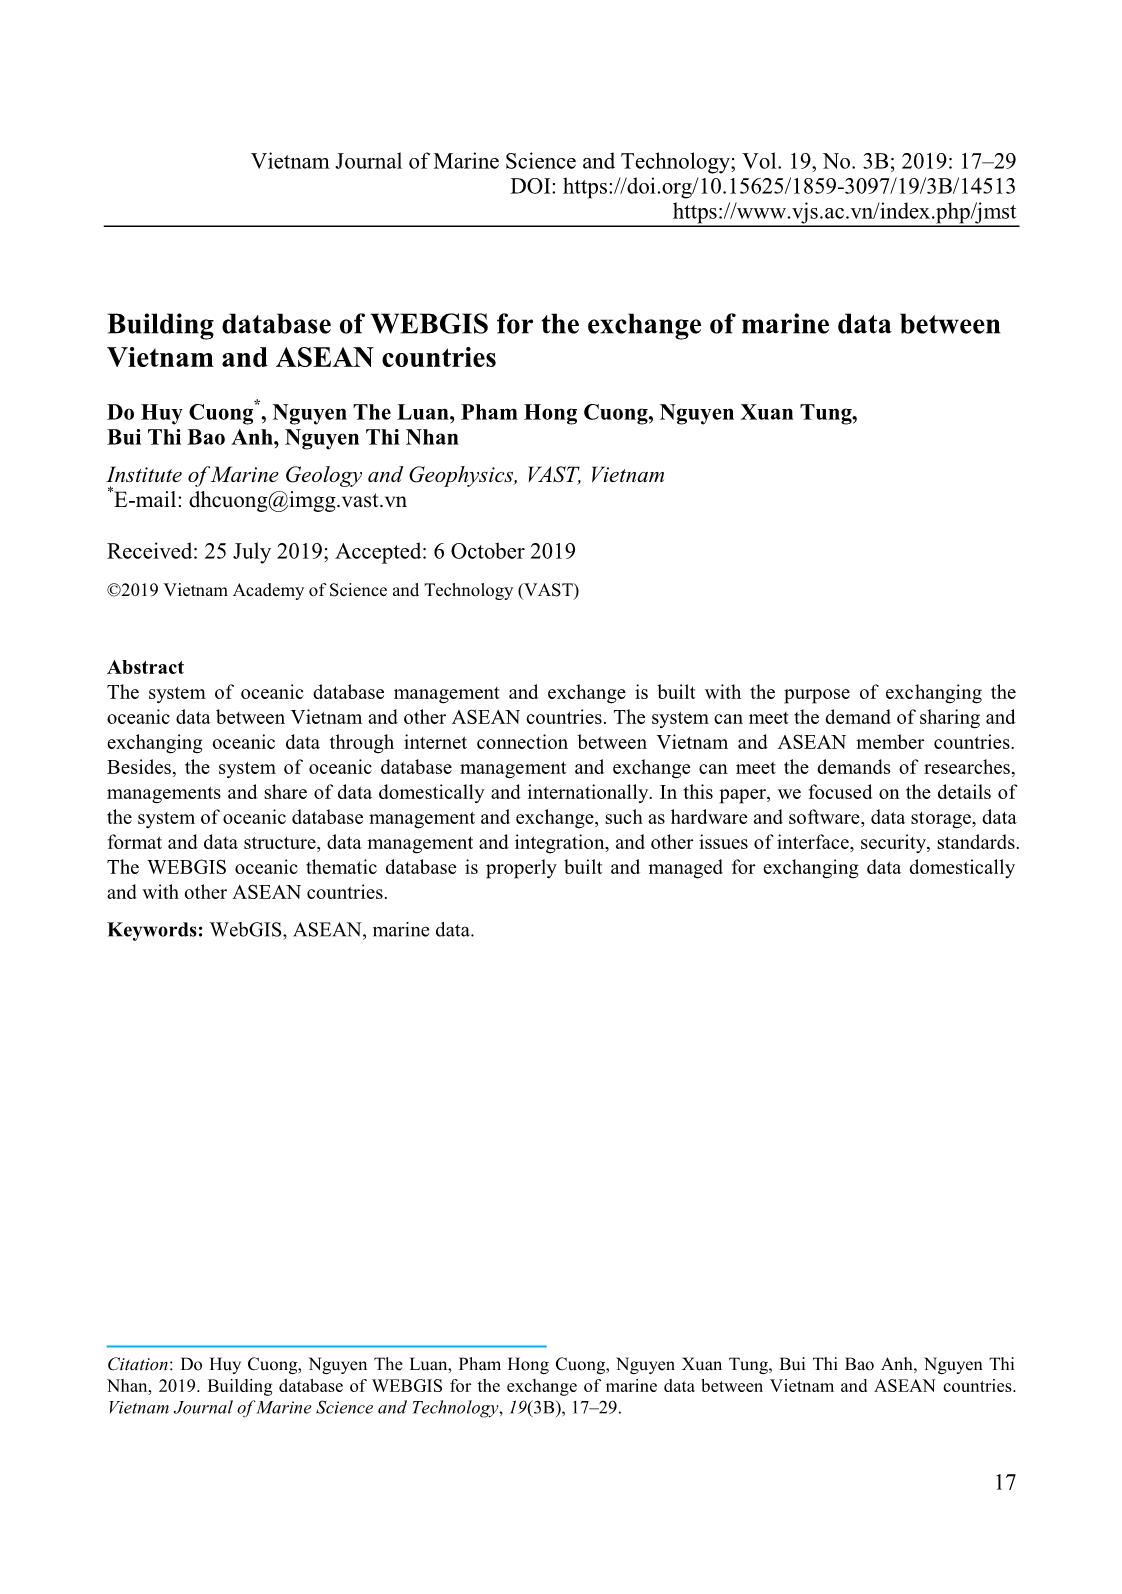 Xây dựng cơ sở dữ liệu WEBGIS phục vụ trao đổi dữ liệu biển giữa Việt Nam với các nước ASEAN trang 1